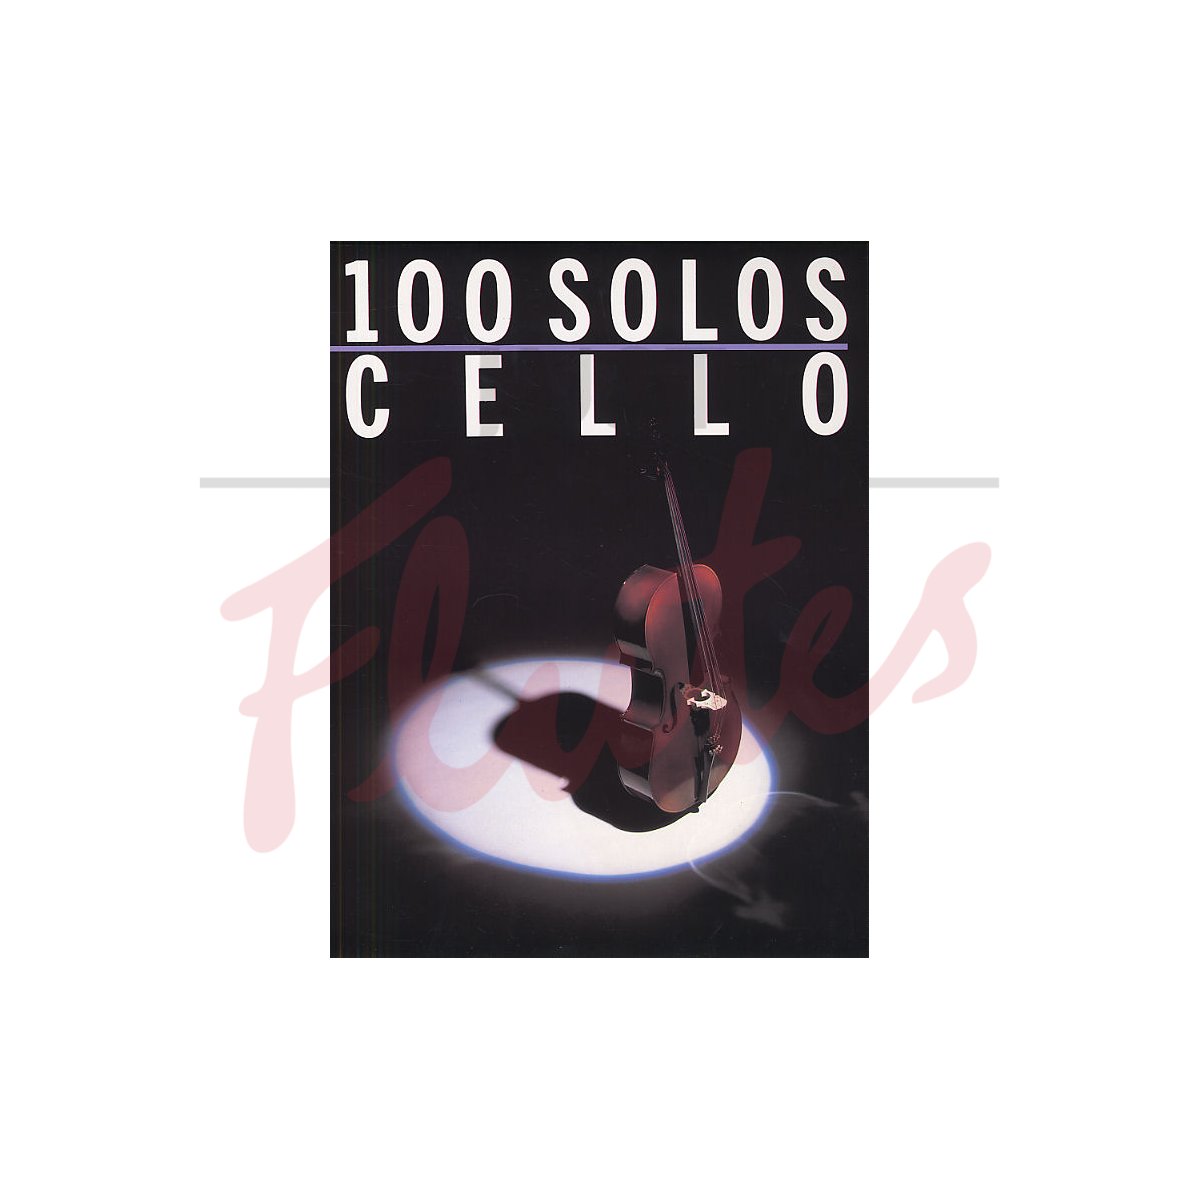 100 Solos for Cello